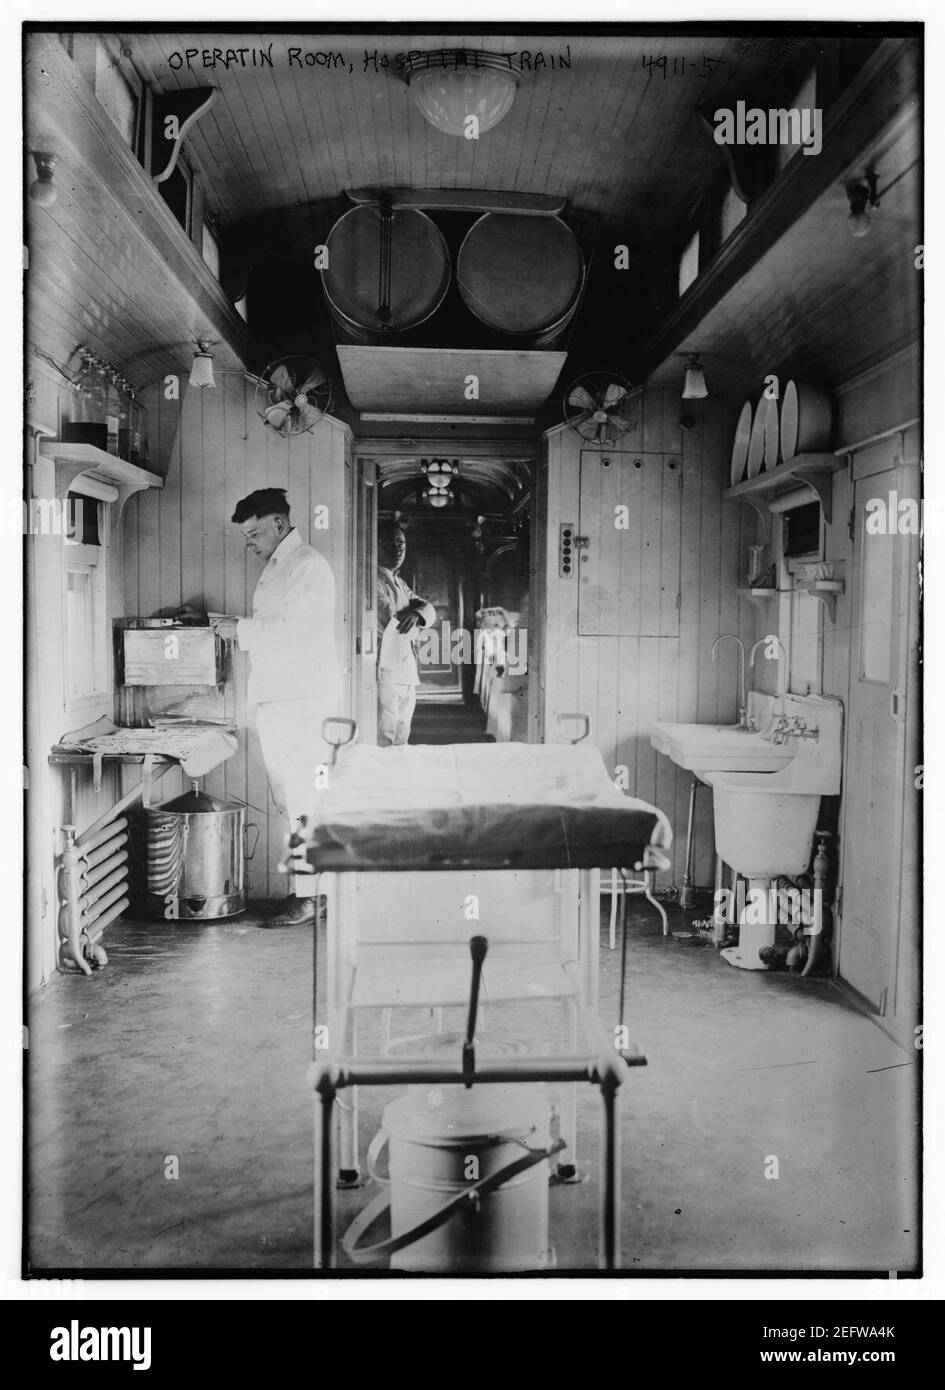 Operatin (i.e. operation) Room, hospital train Stock Photo